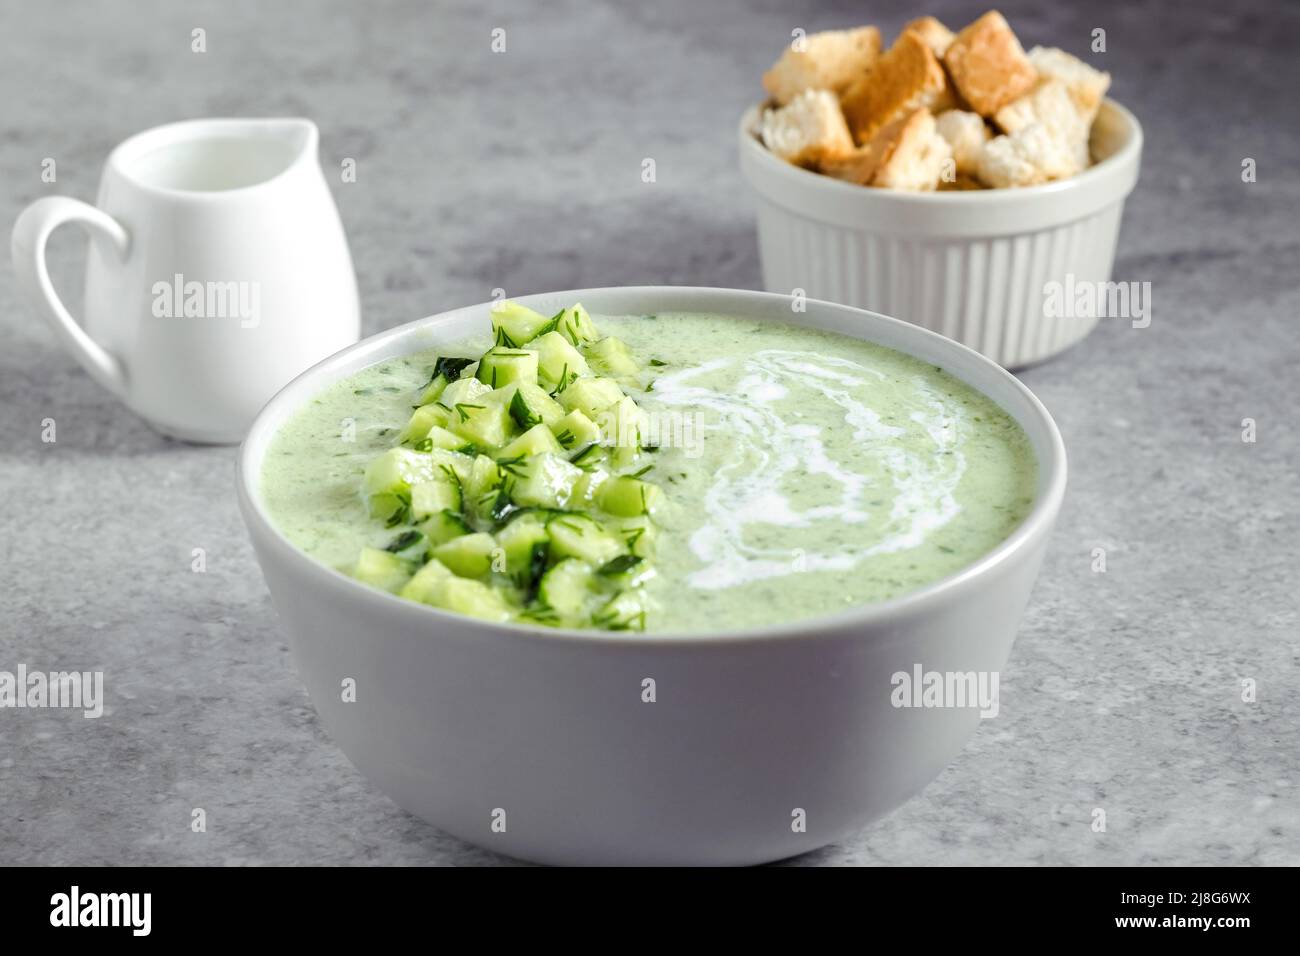 Gazpacho concombre. Soupe d'été fraîche et verte sur fond gris. Concept de cuisine végétalienne Banque D'Images